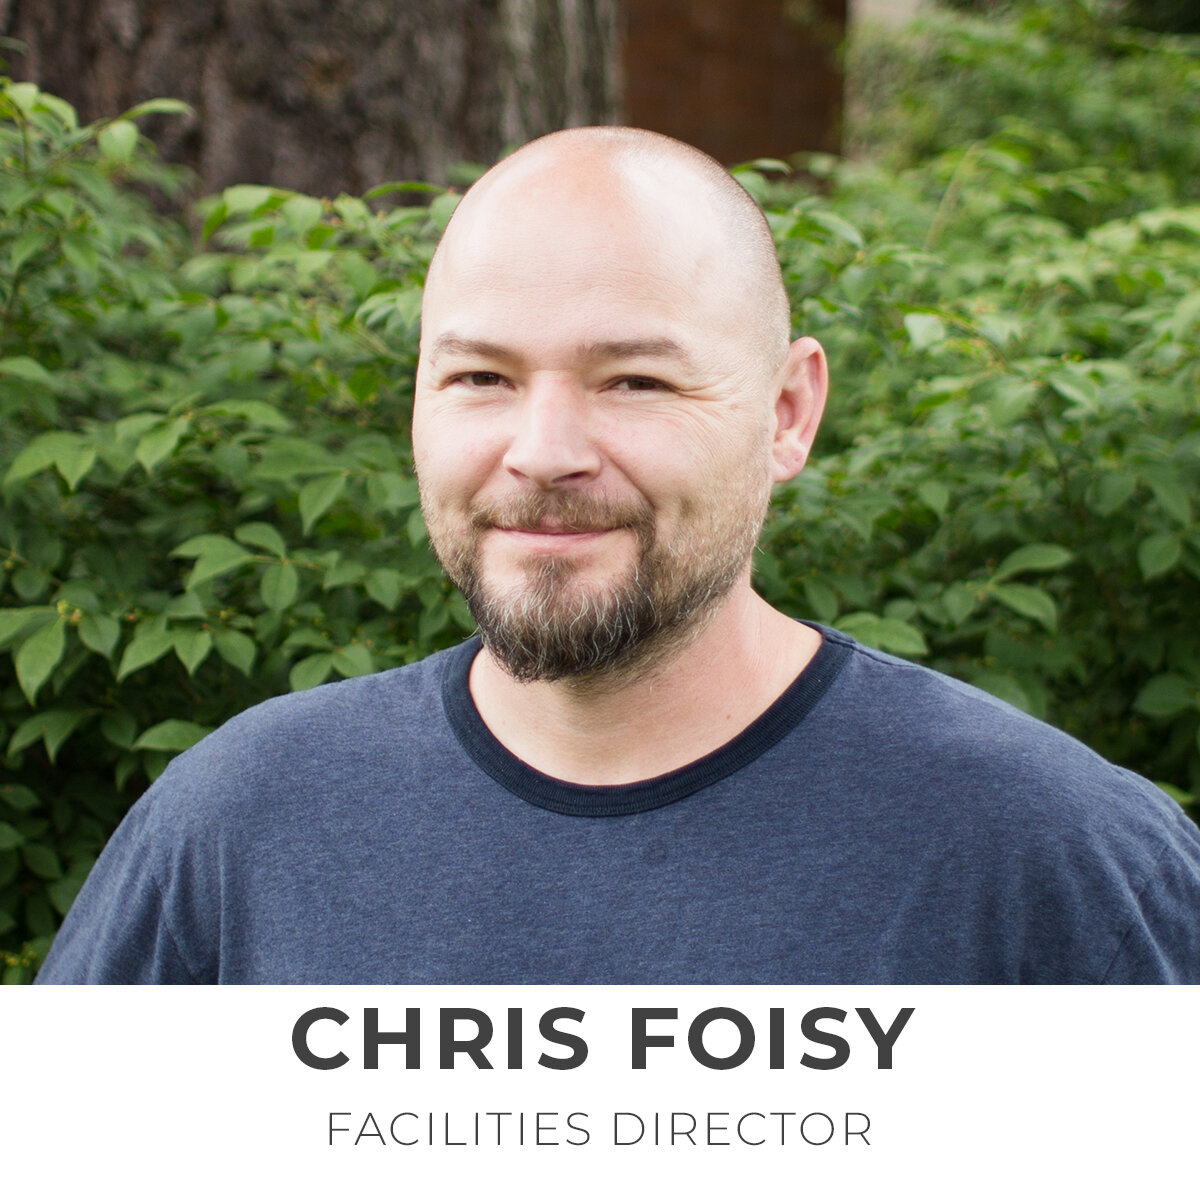 Chris Foisy, Facilities Director